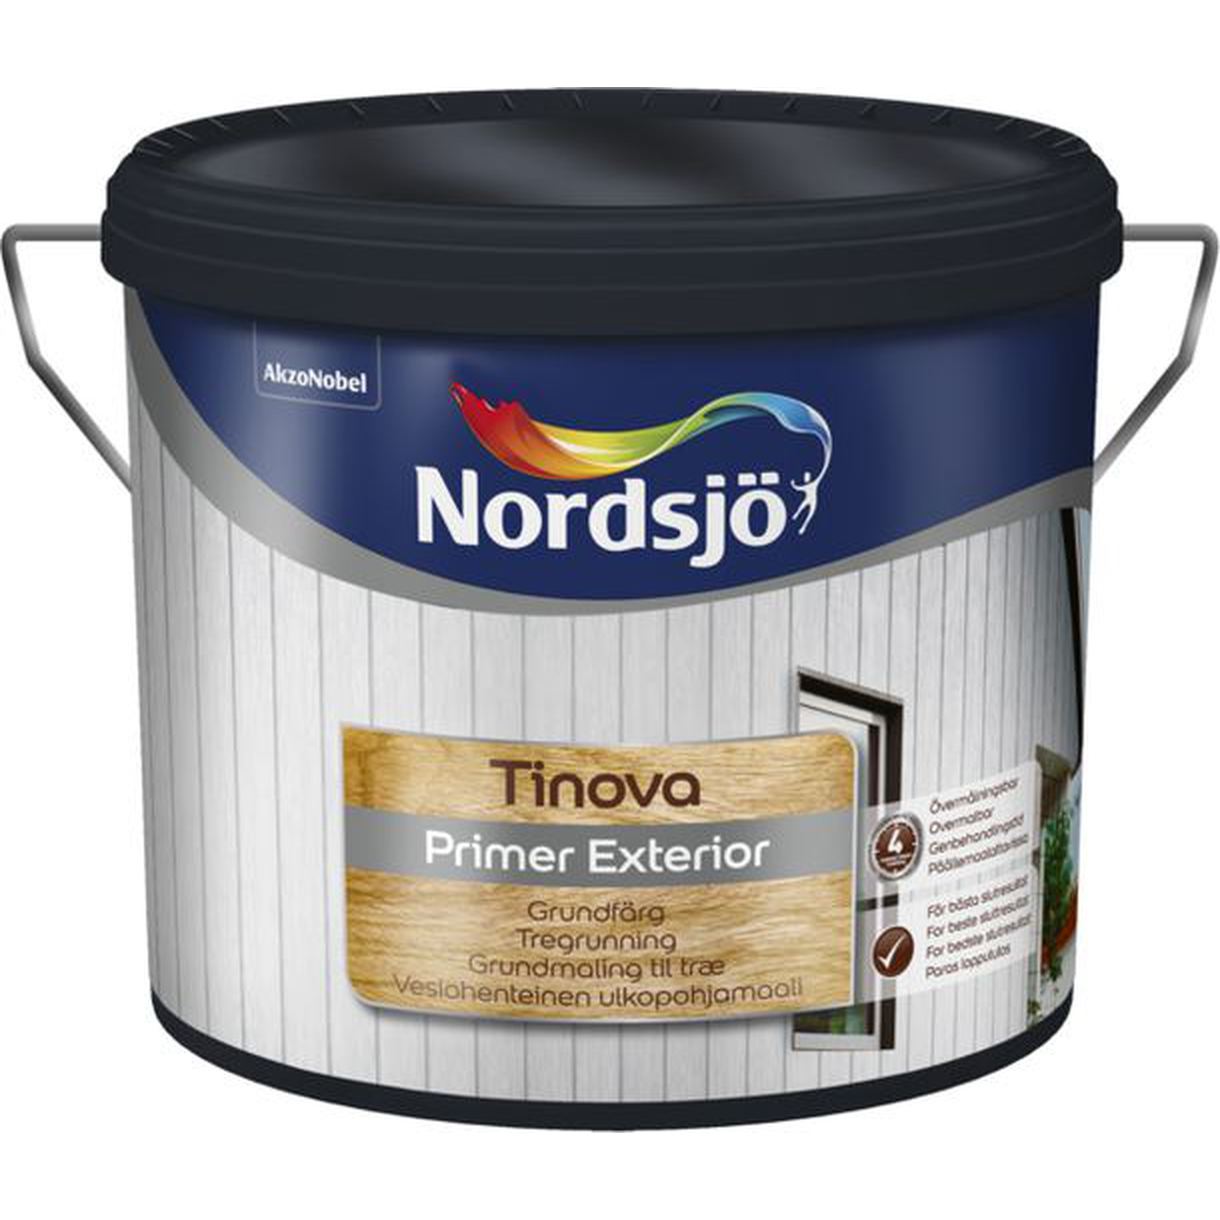 Tinova Primer Exterior Vit från Nordsjö 2,5L